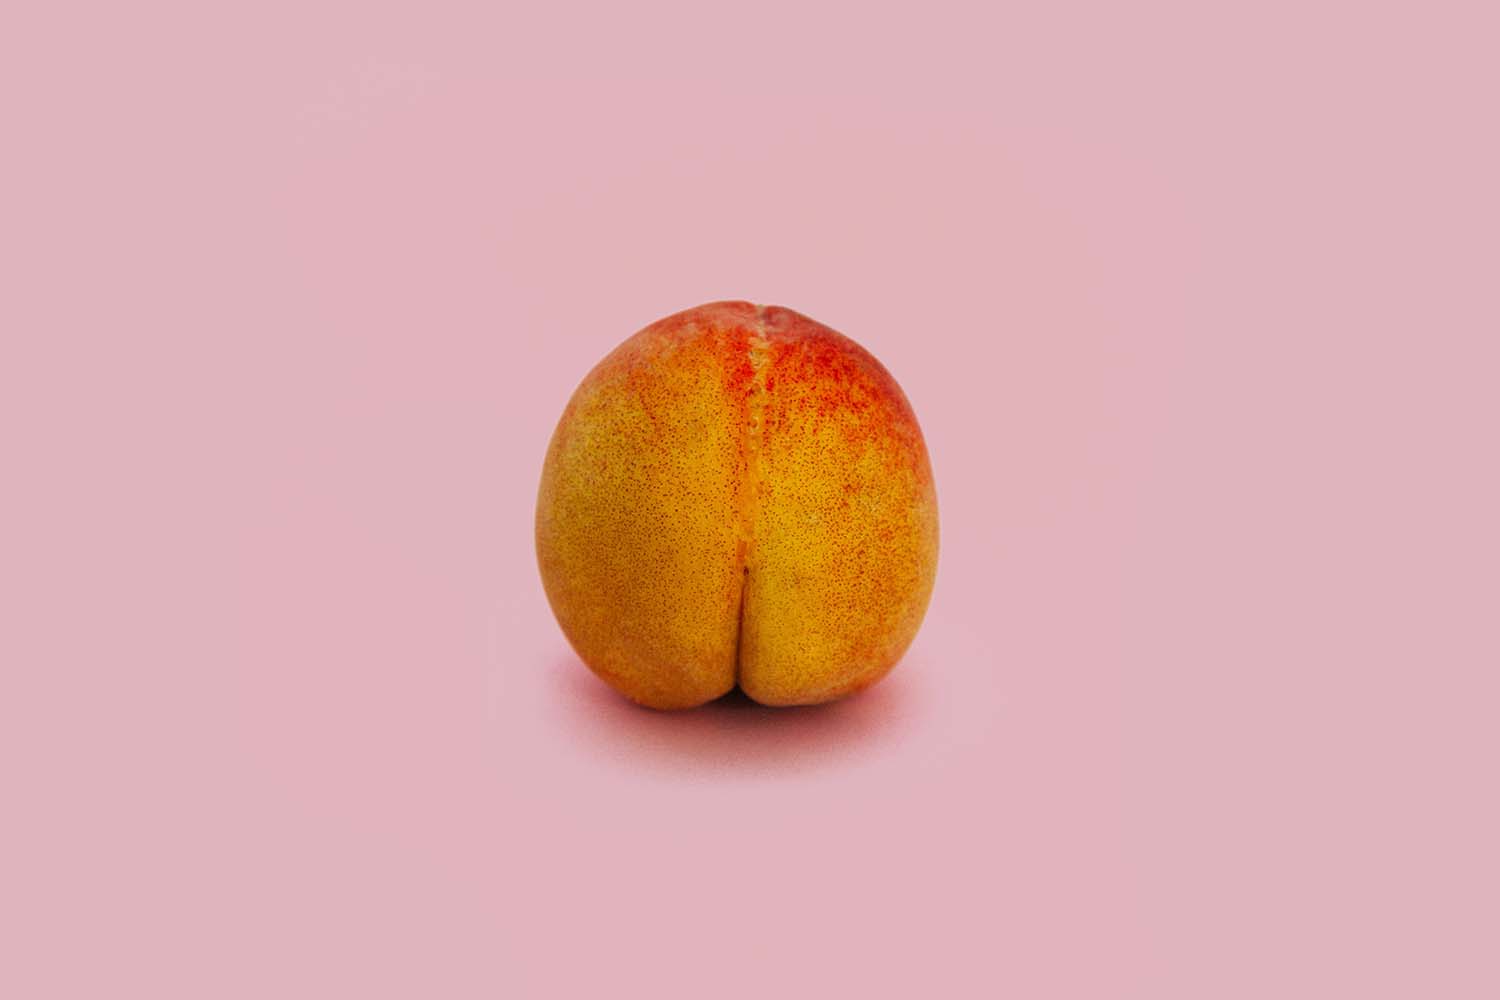 peach that looks like female anatomy